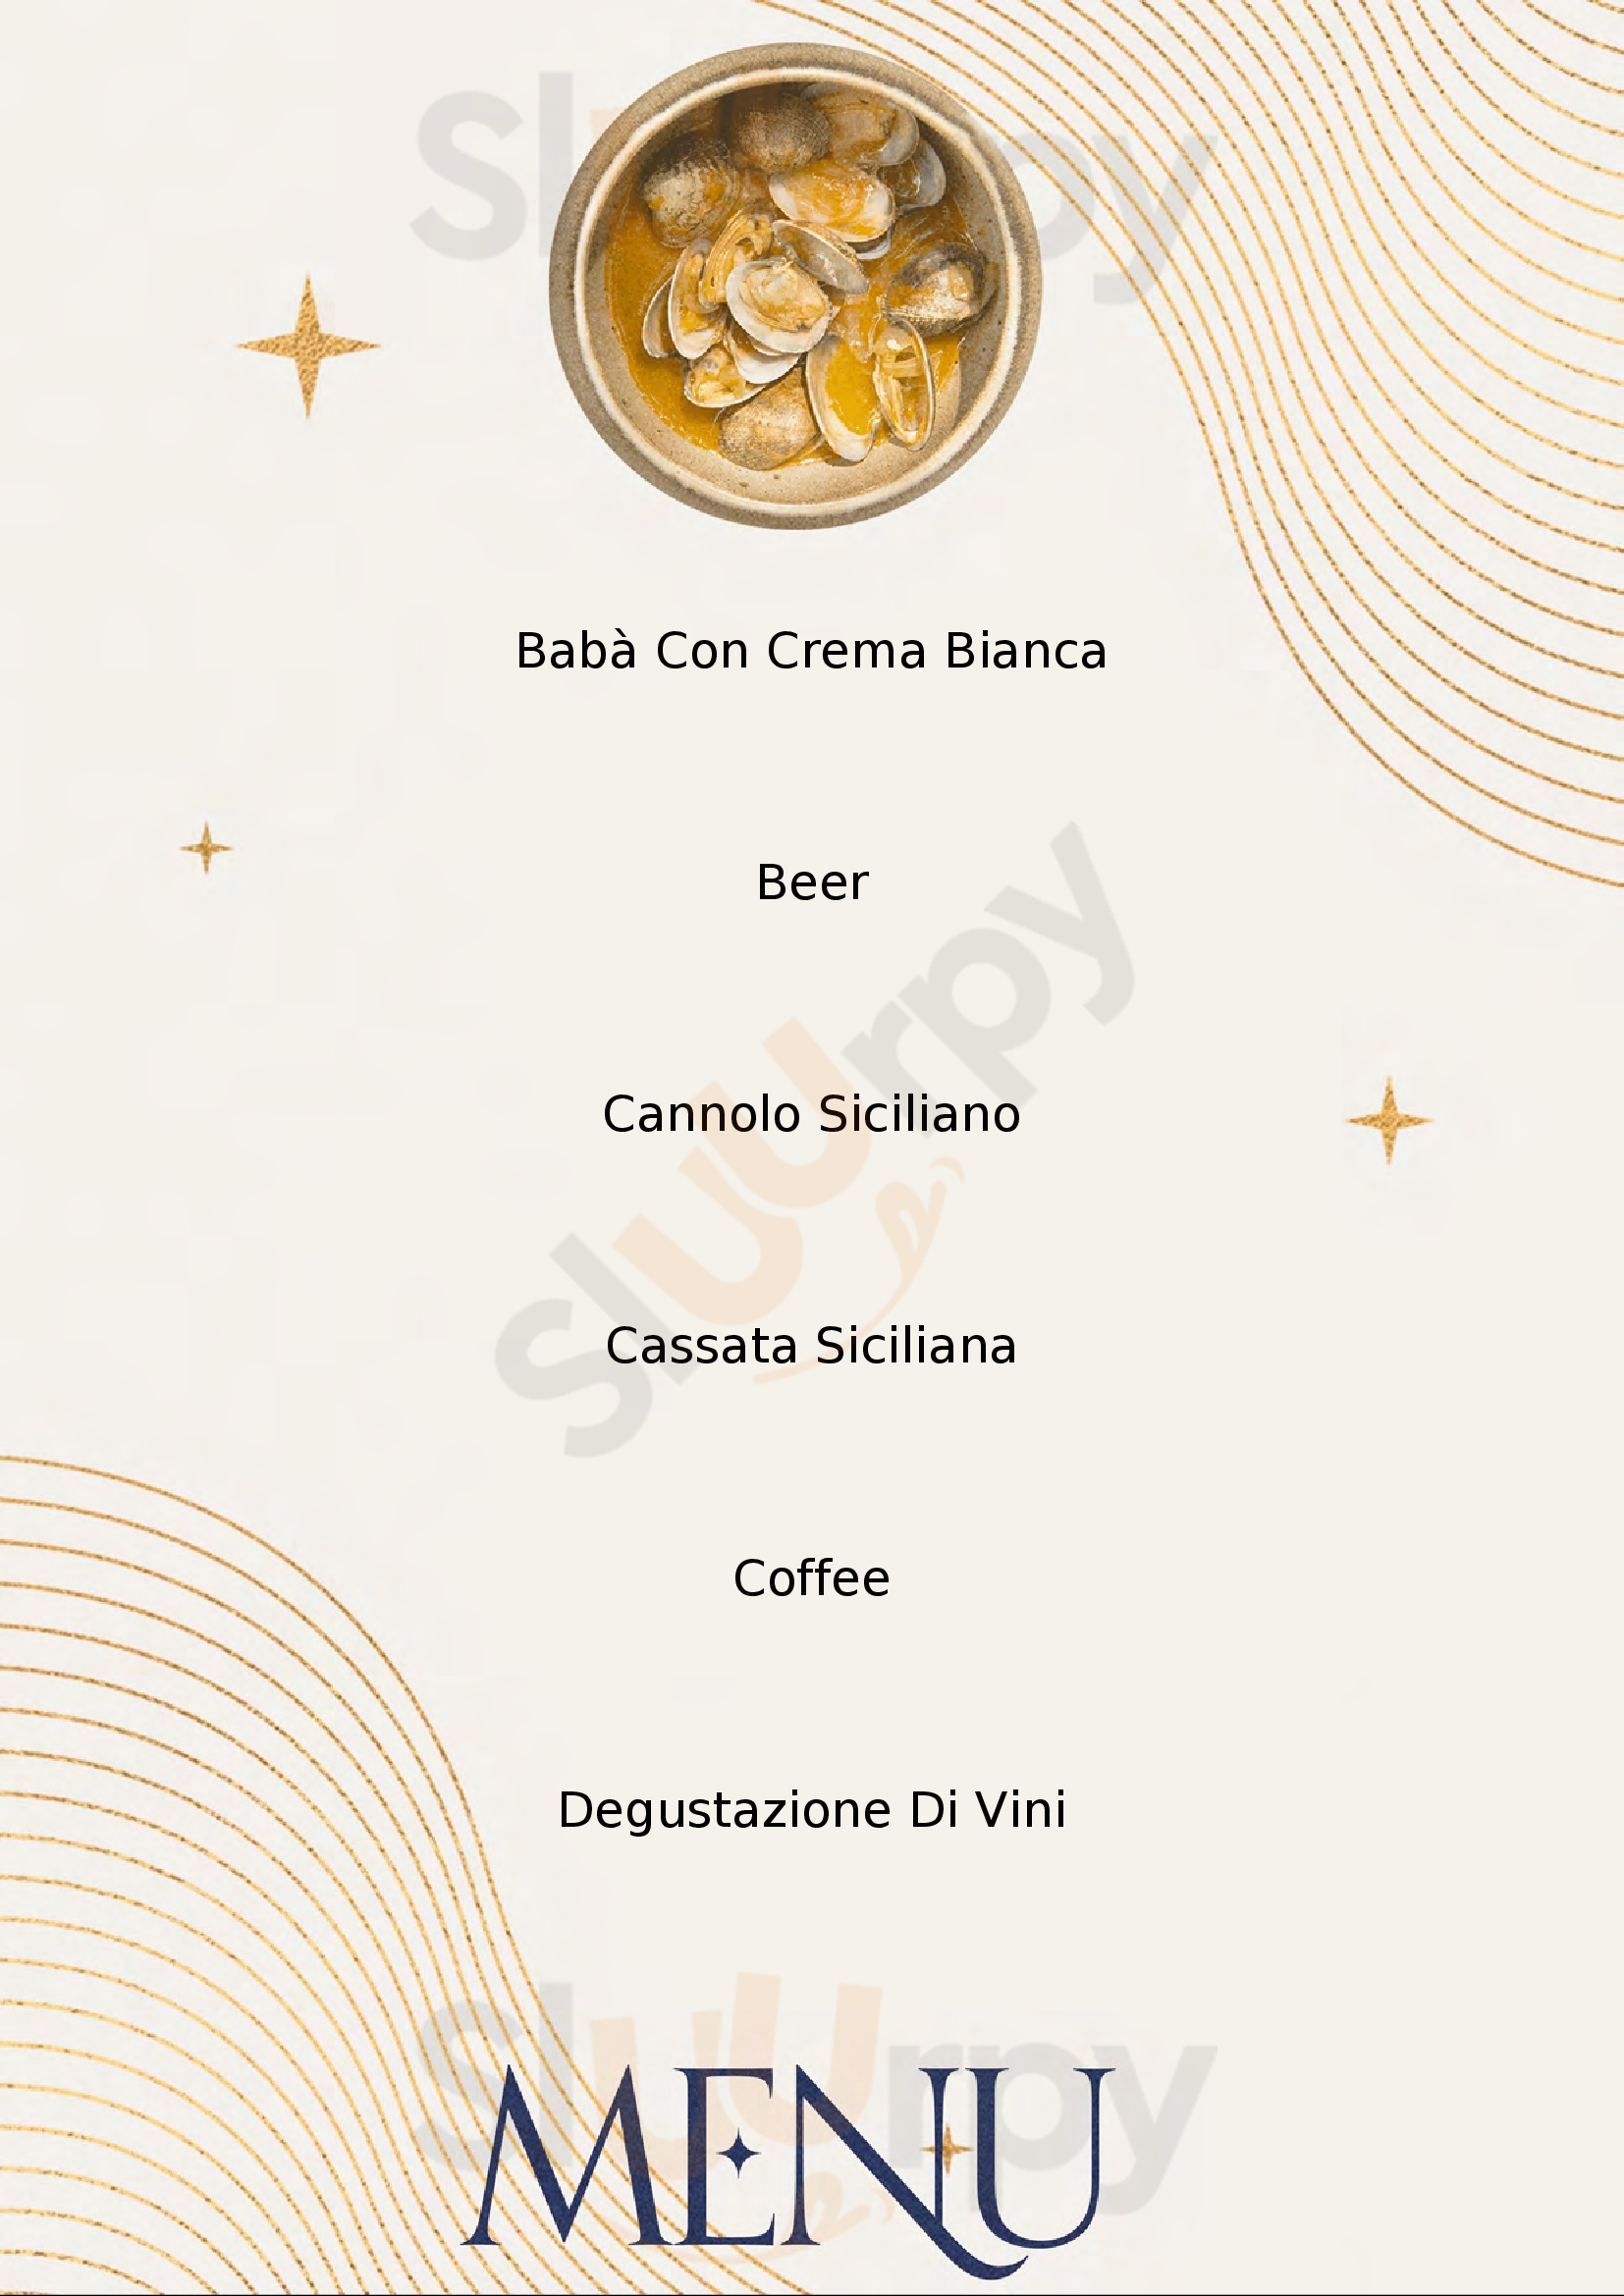 Gran Caffe Reggio Calabria menù 1 pagina